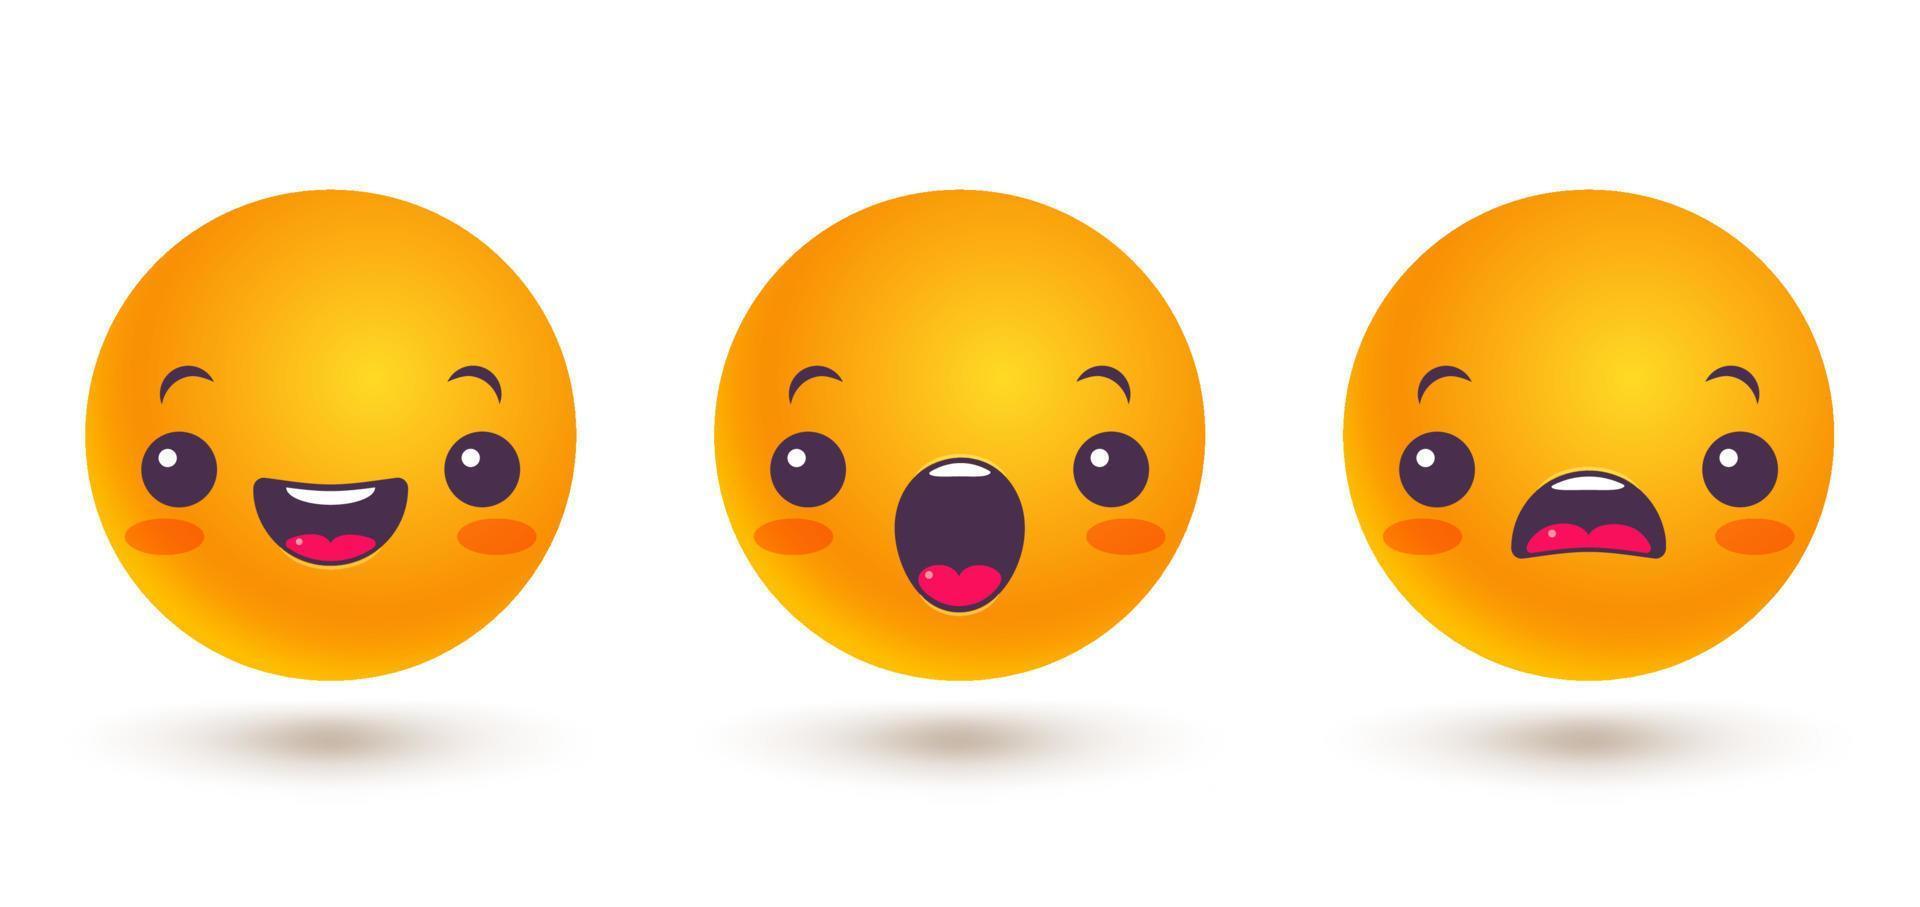 vector set iconos de emoji en estilo kawaii.